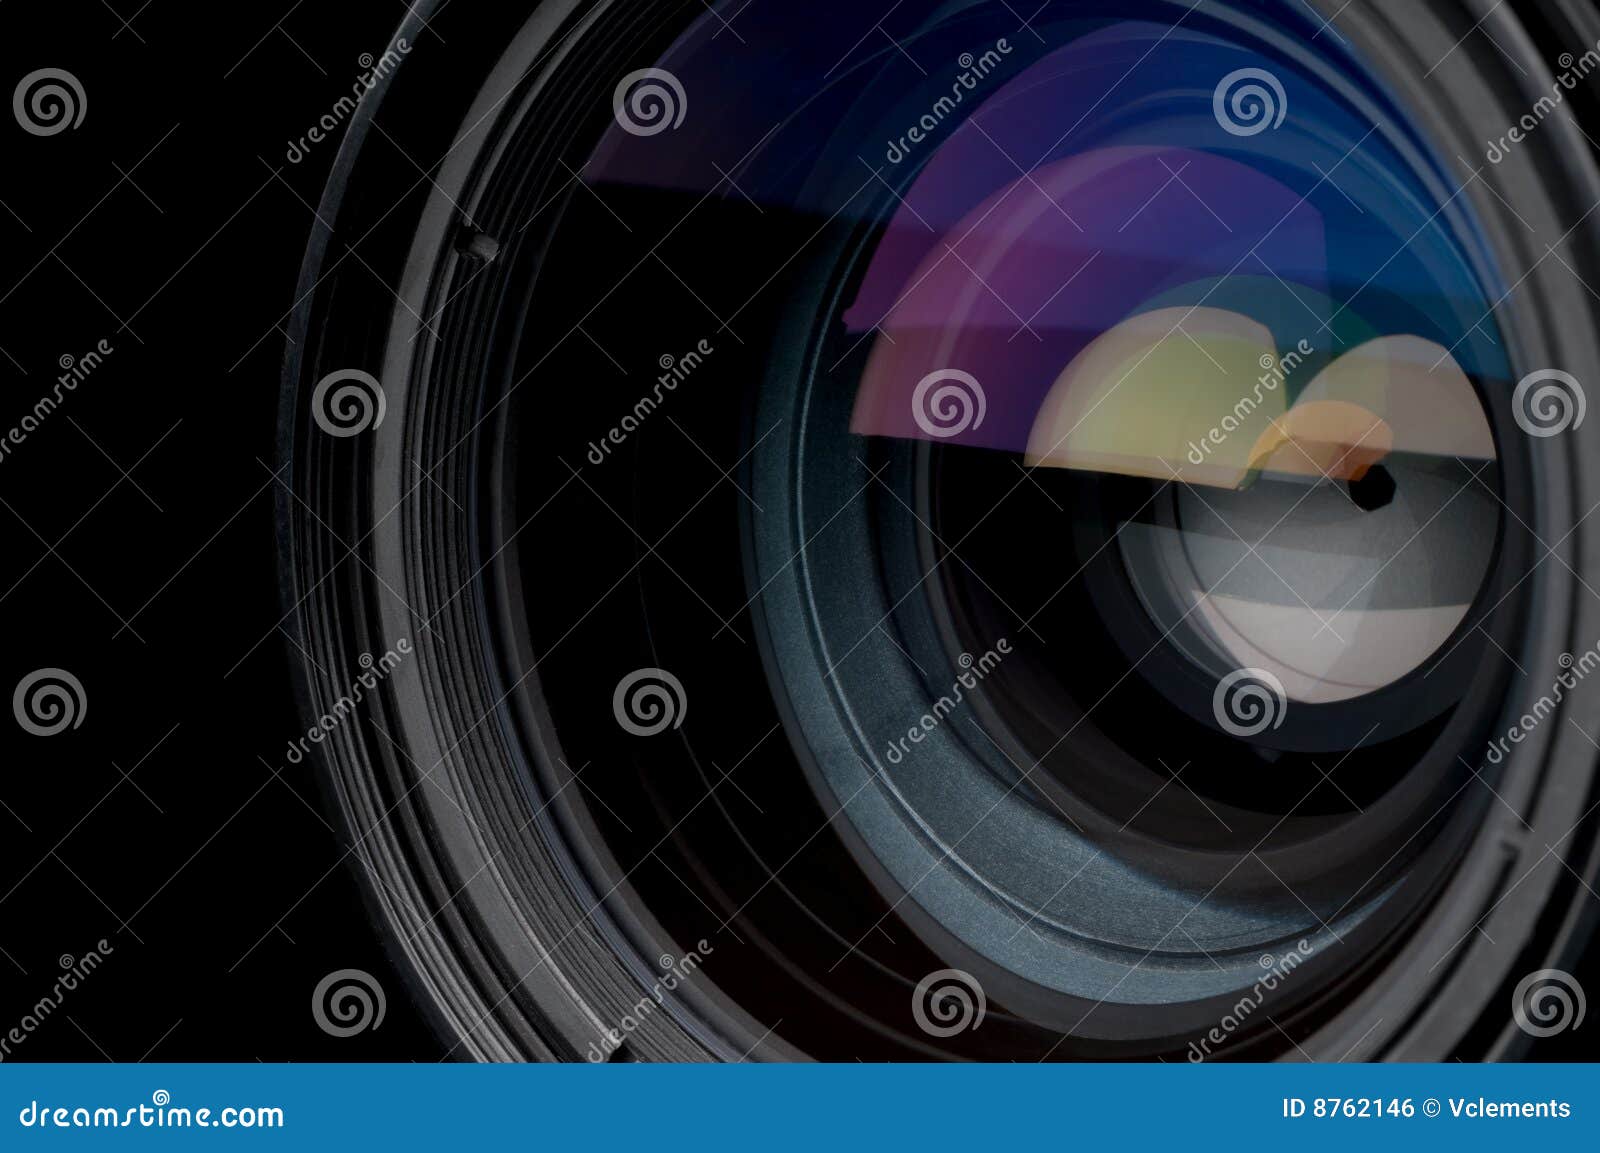 closeup of a photographic camera lens